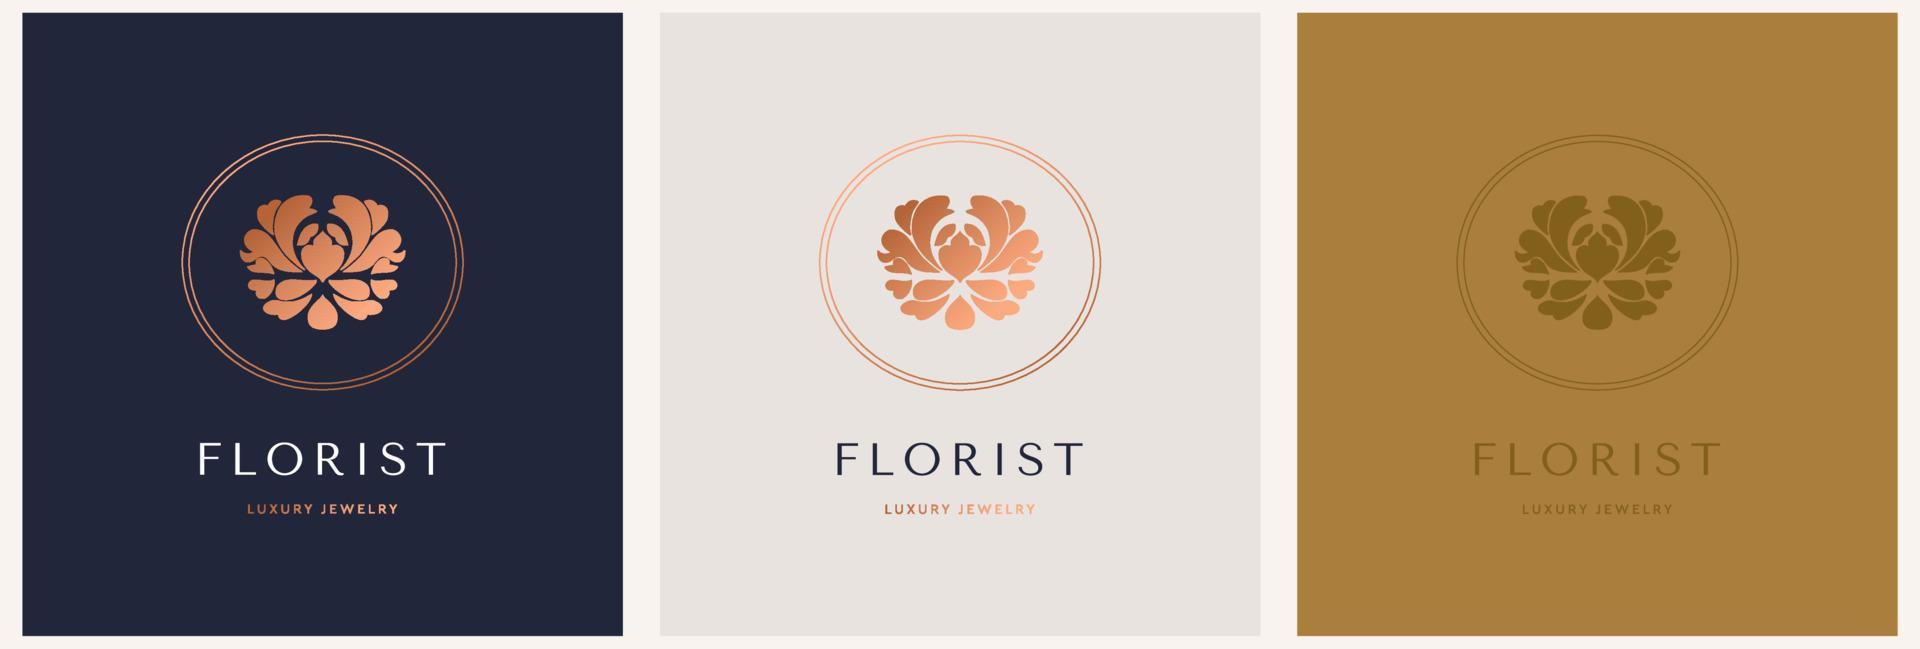 elegant vector logo sjabloon van een bloem. abstract symbool in een lineair stijl voor schoonheidsmiddelen en verpakking, sieraden, handwerk of schoonheid producten.